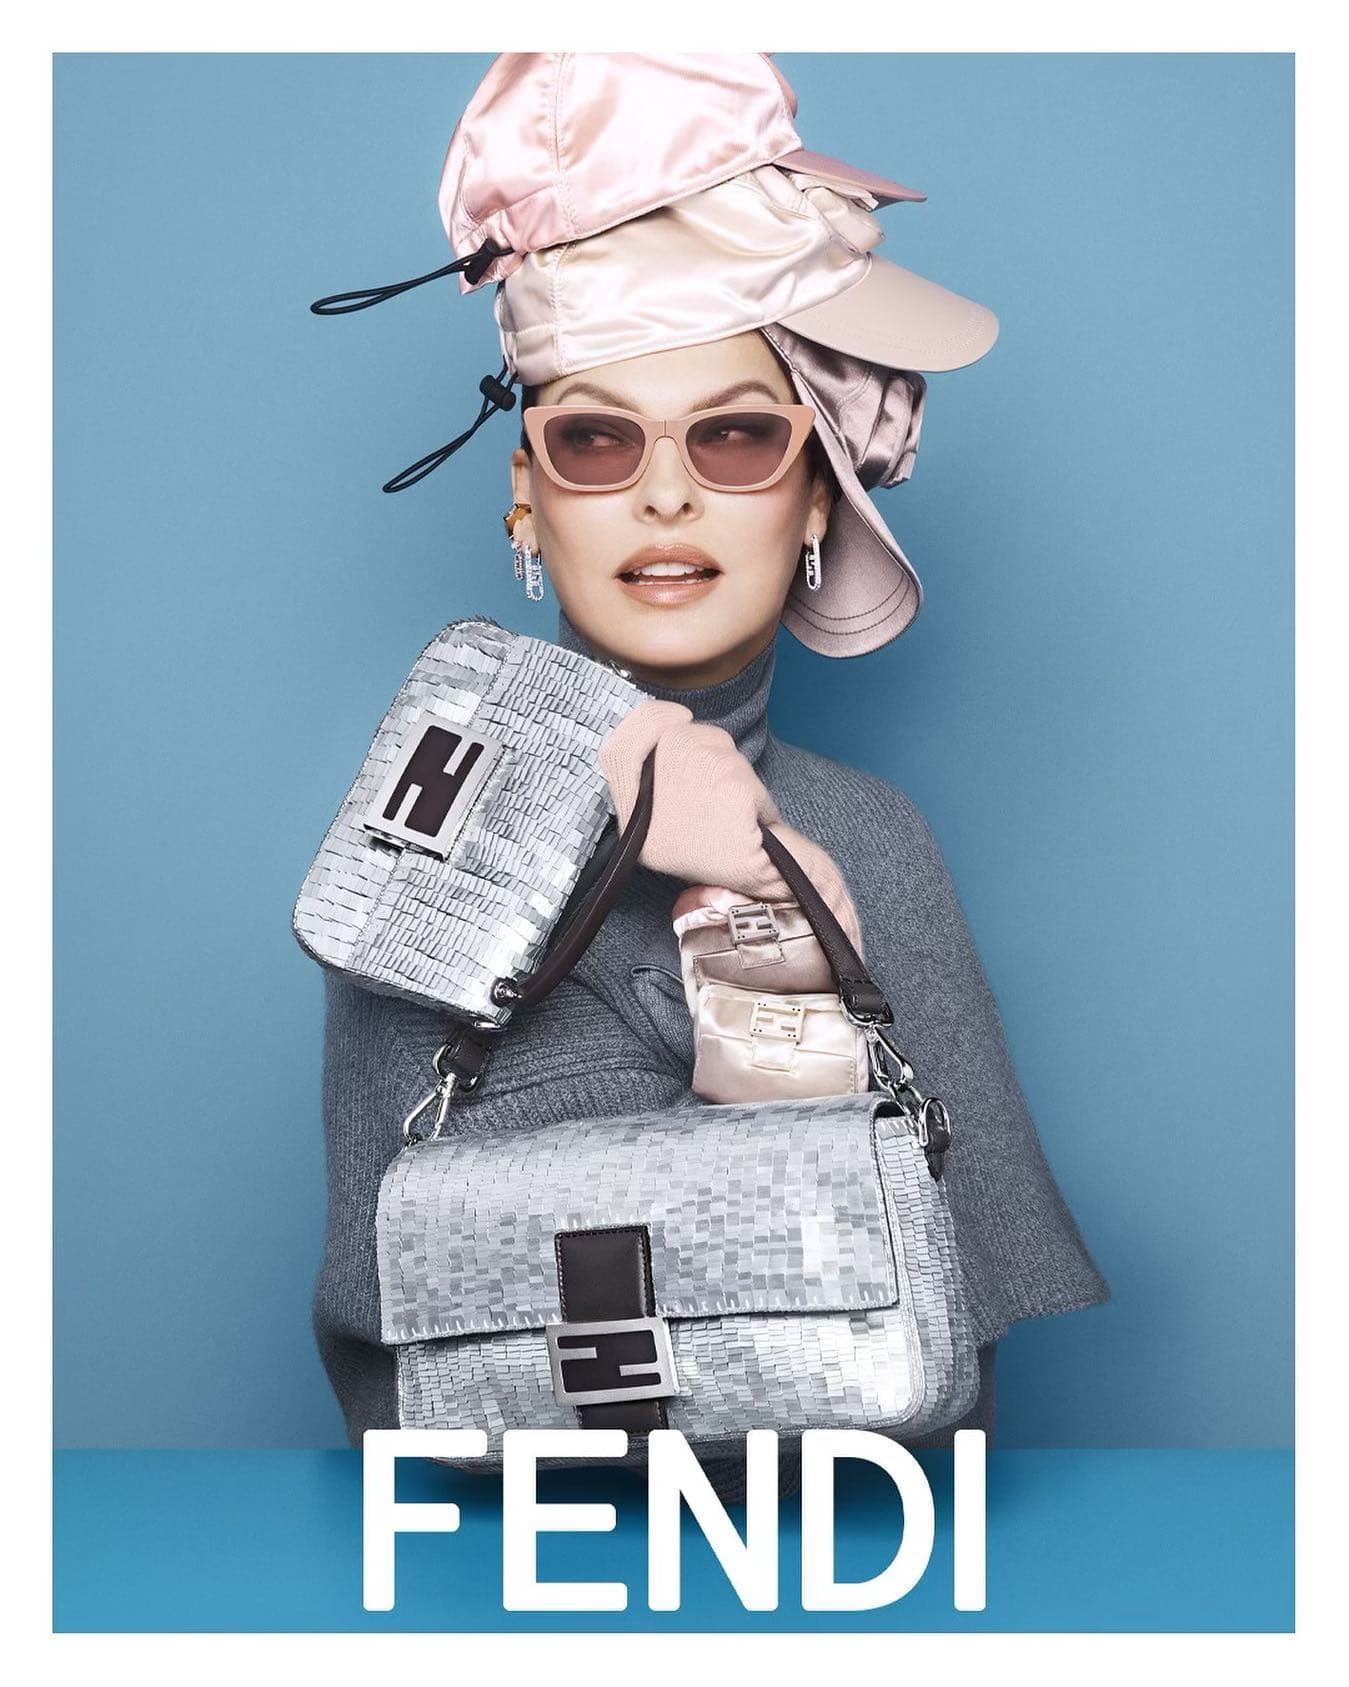 Fendi Baguette 2022 Ad Campaign Review